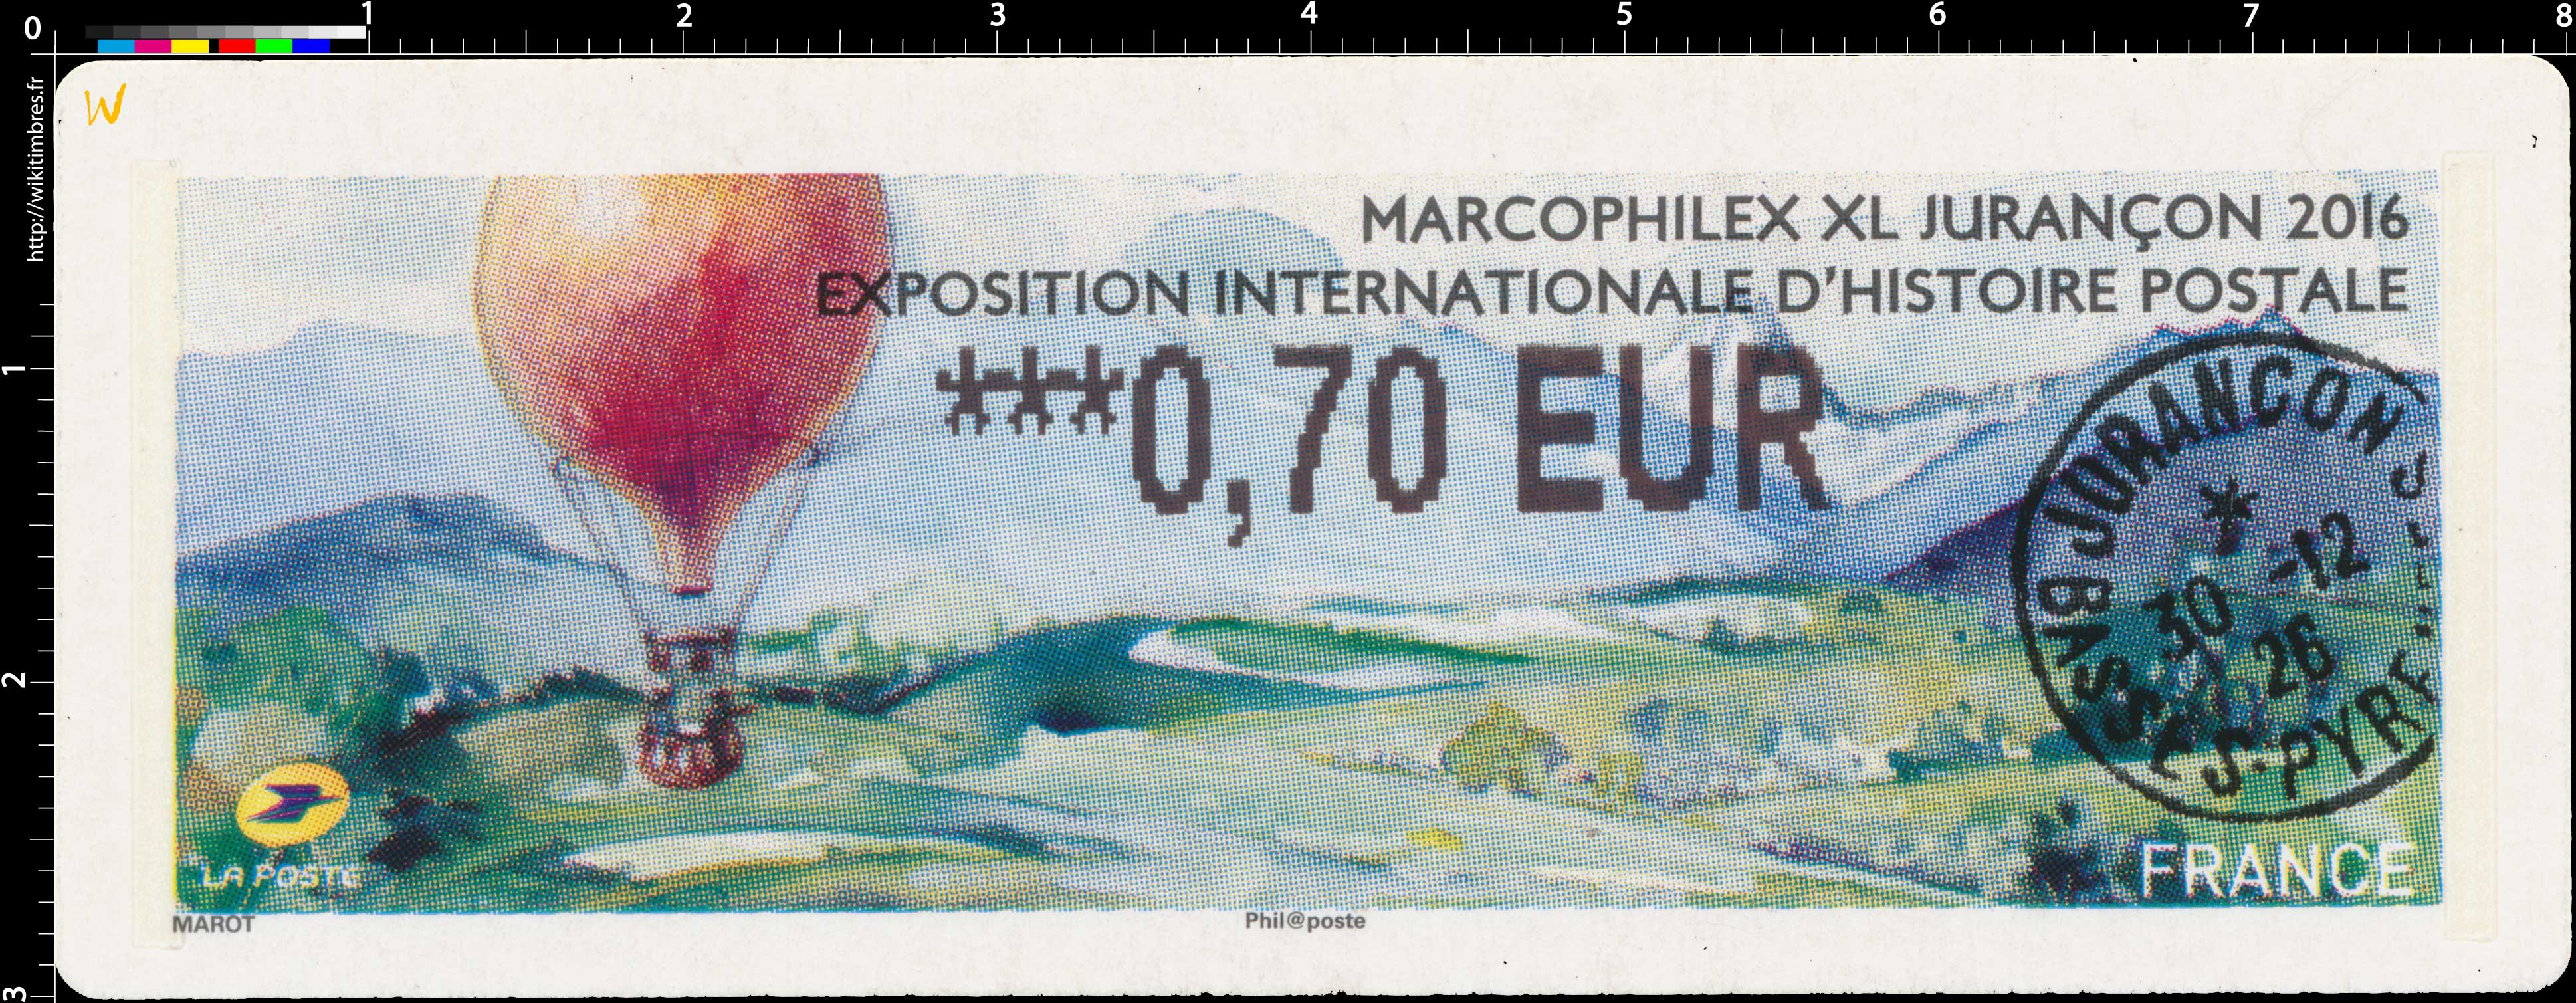 Marcophilex XL 2016 Jurançon exposition internationale d’histoire postale